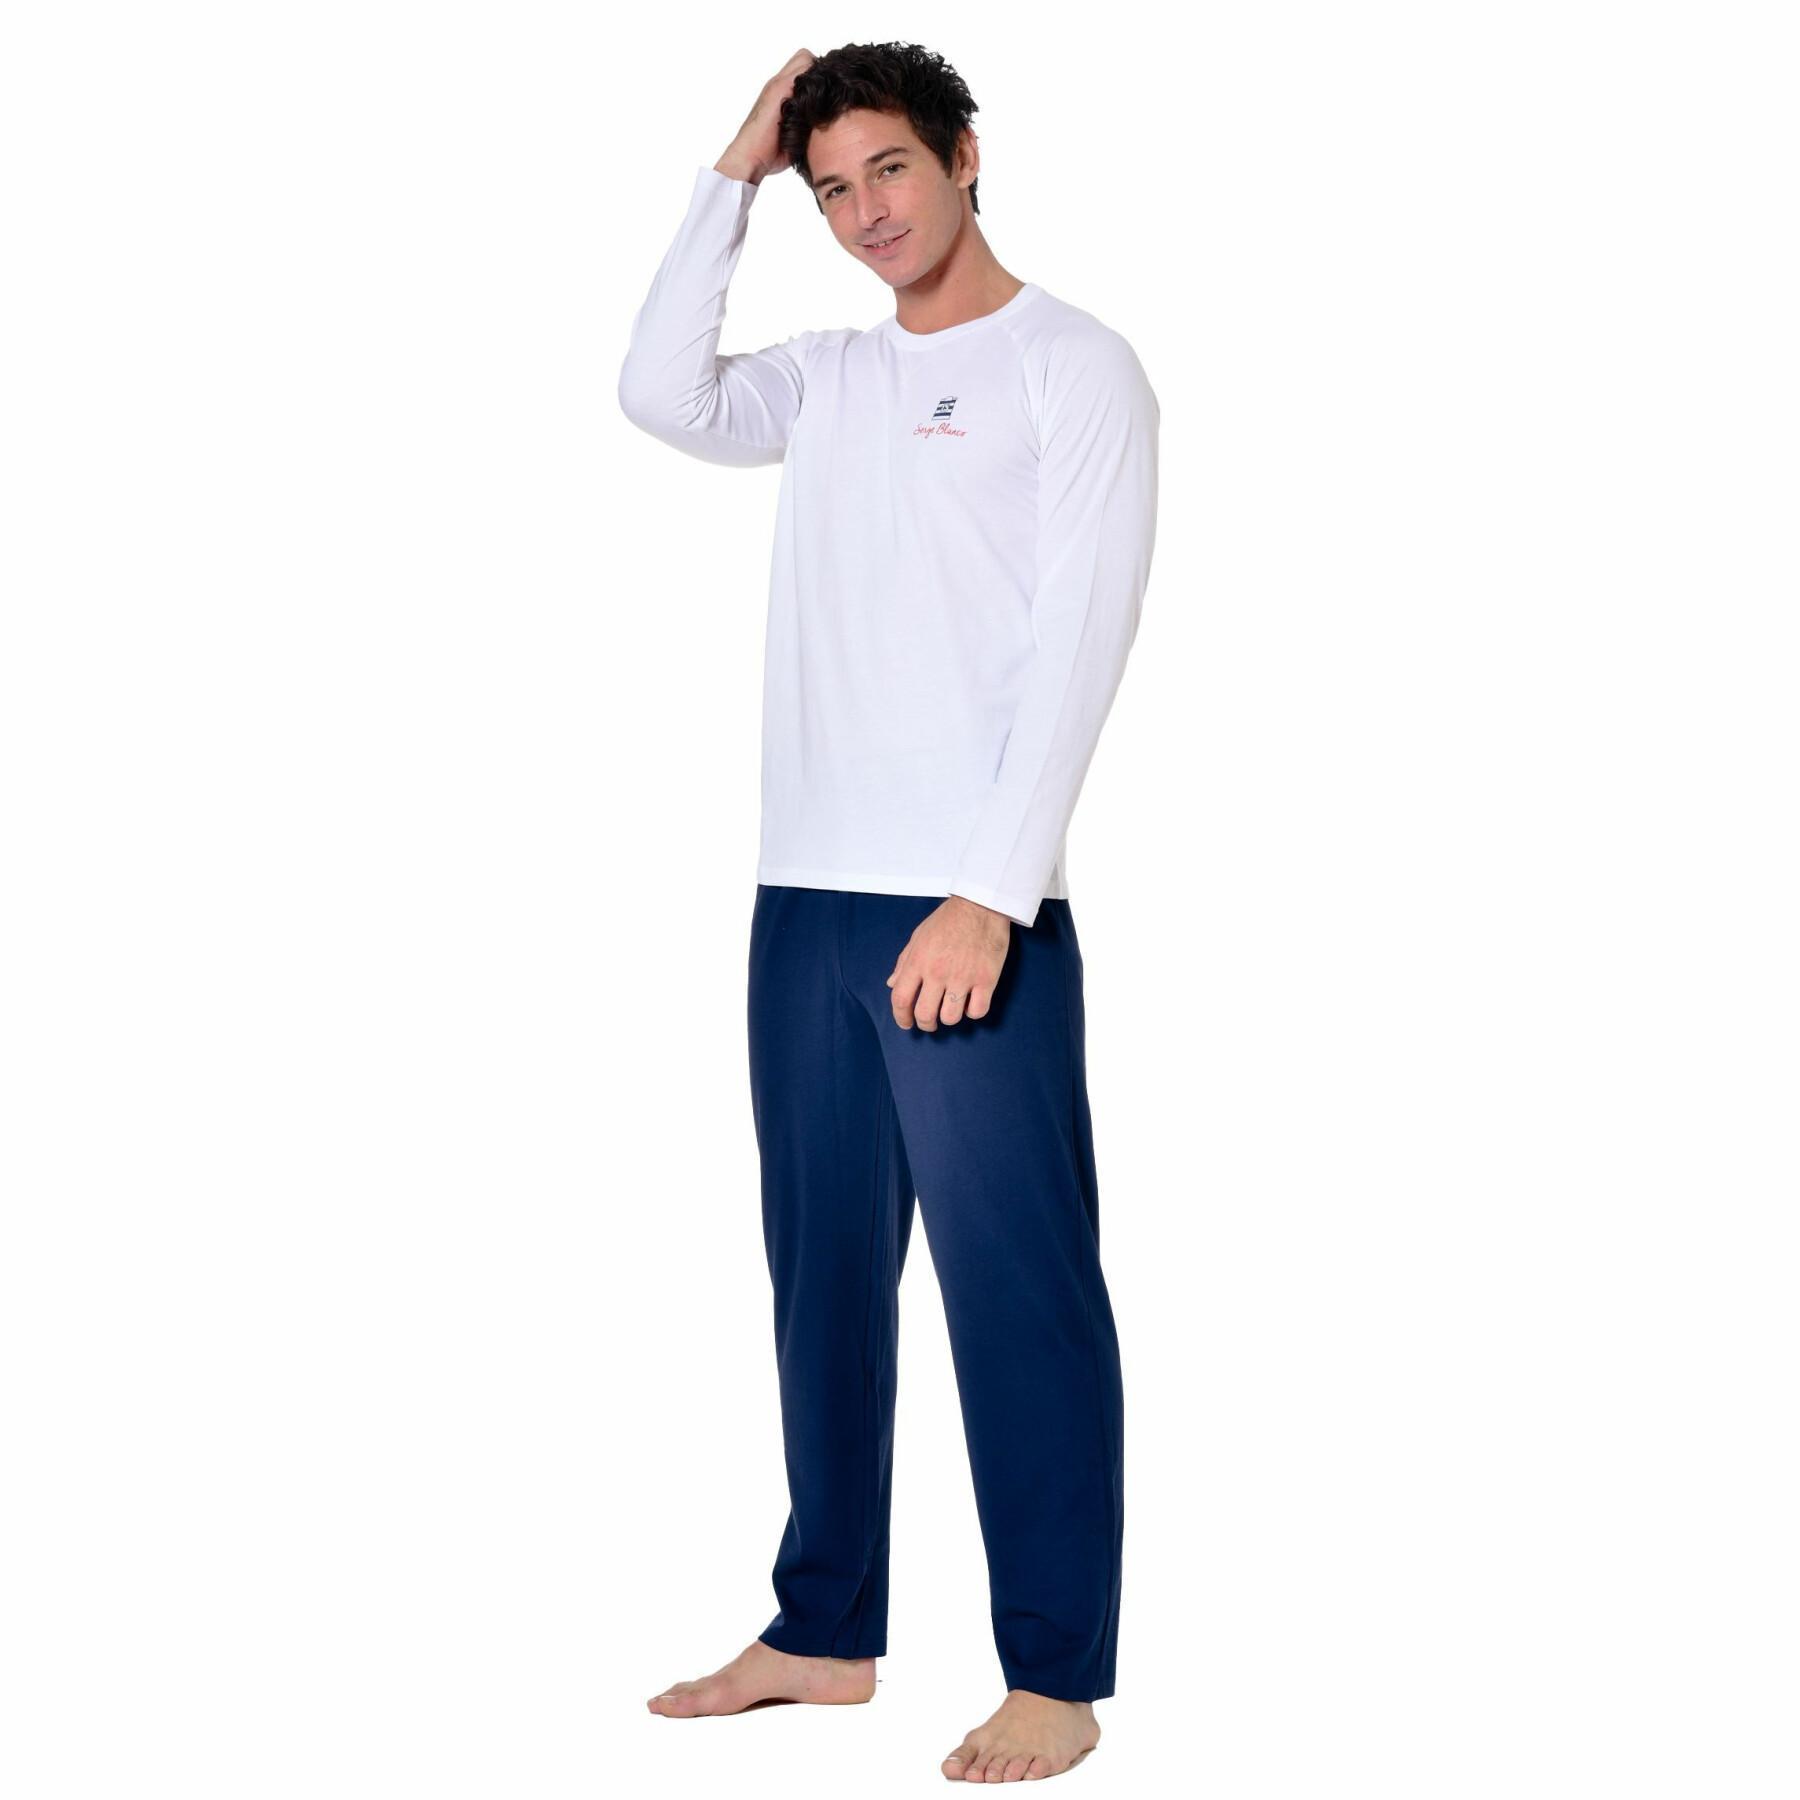 Långt pyjamasset med tvåfärgad t-shirt med rund halsringning Serge Blanco